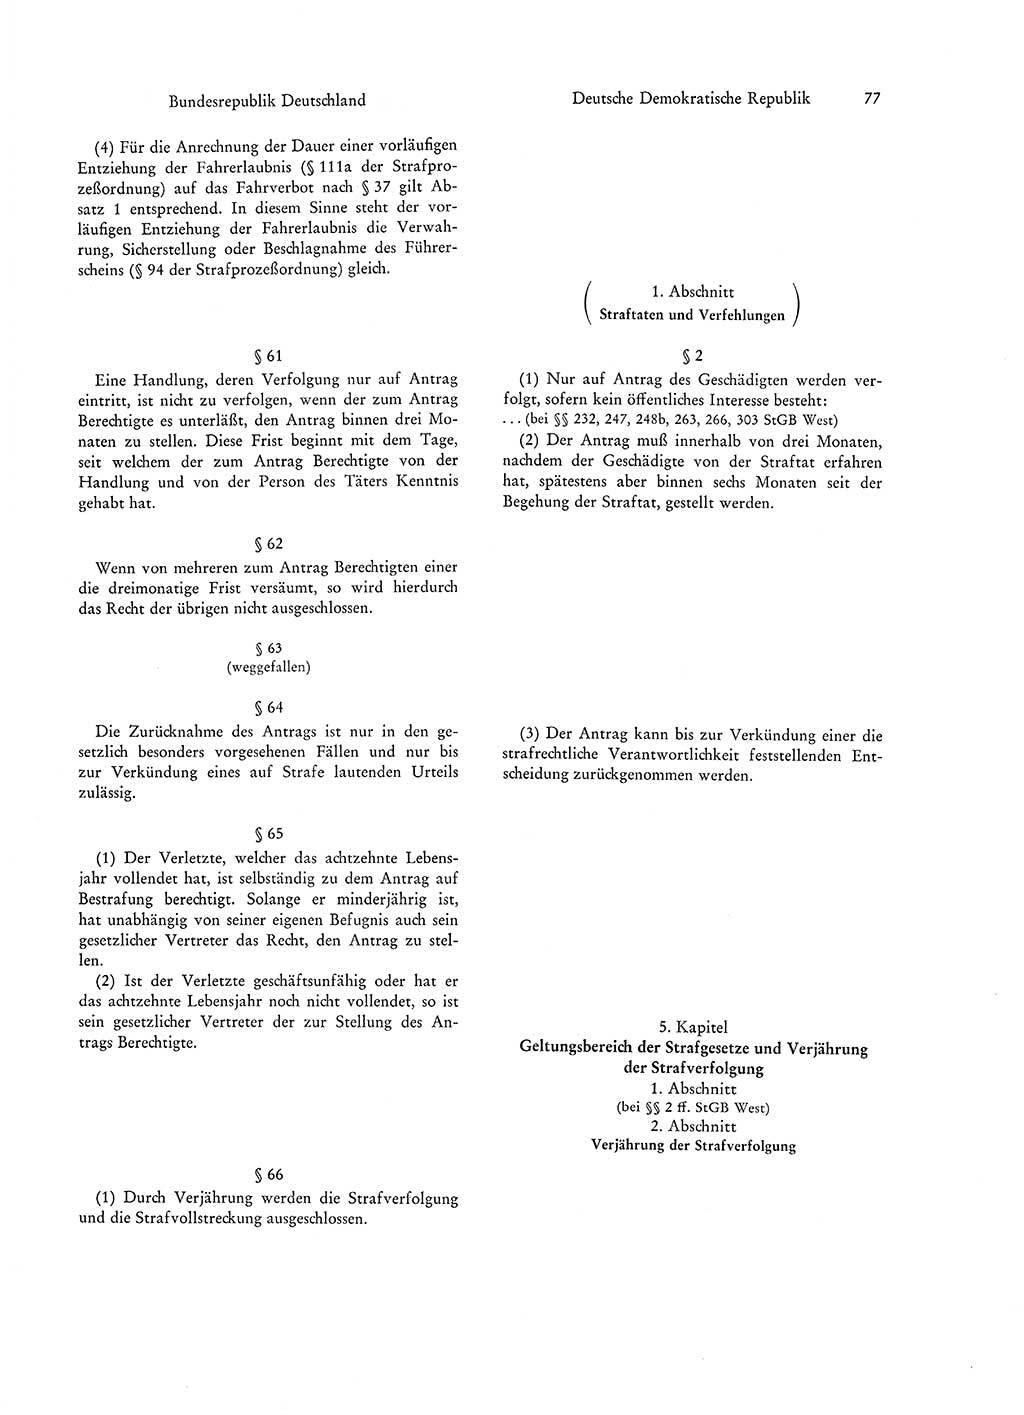 Strafgesetzgebung in Deutschland [Bundesrepublik Deutschland (BRD) und Deutsche Demokratische Republik (DDR)] 1972, Seite 77 (Str.-Ges. Dtl. StGB BRD DDR 1972, S. 77)